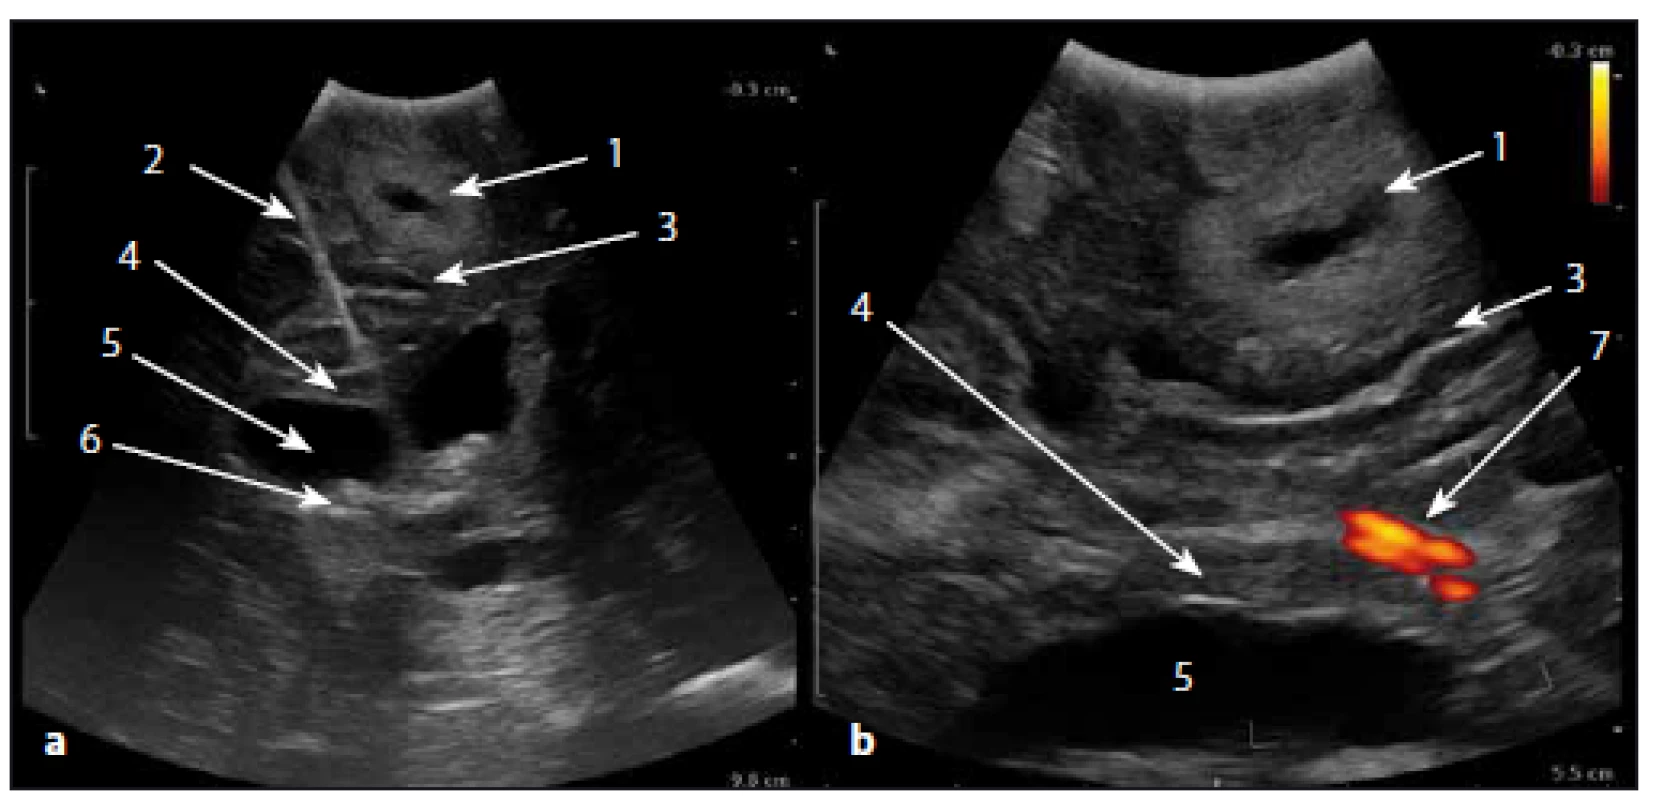 Intraoperativní sonografický obraz v B módu.
Fig. 1. Intraoperative ultrasound image in B-mode.